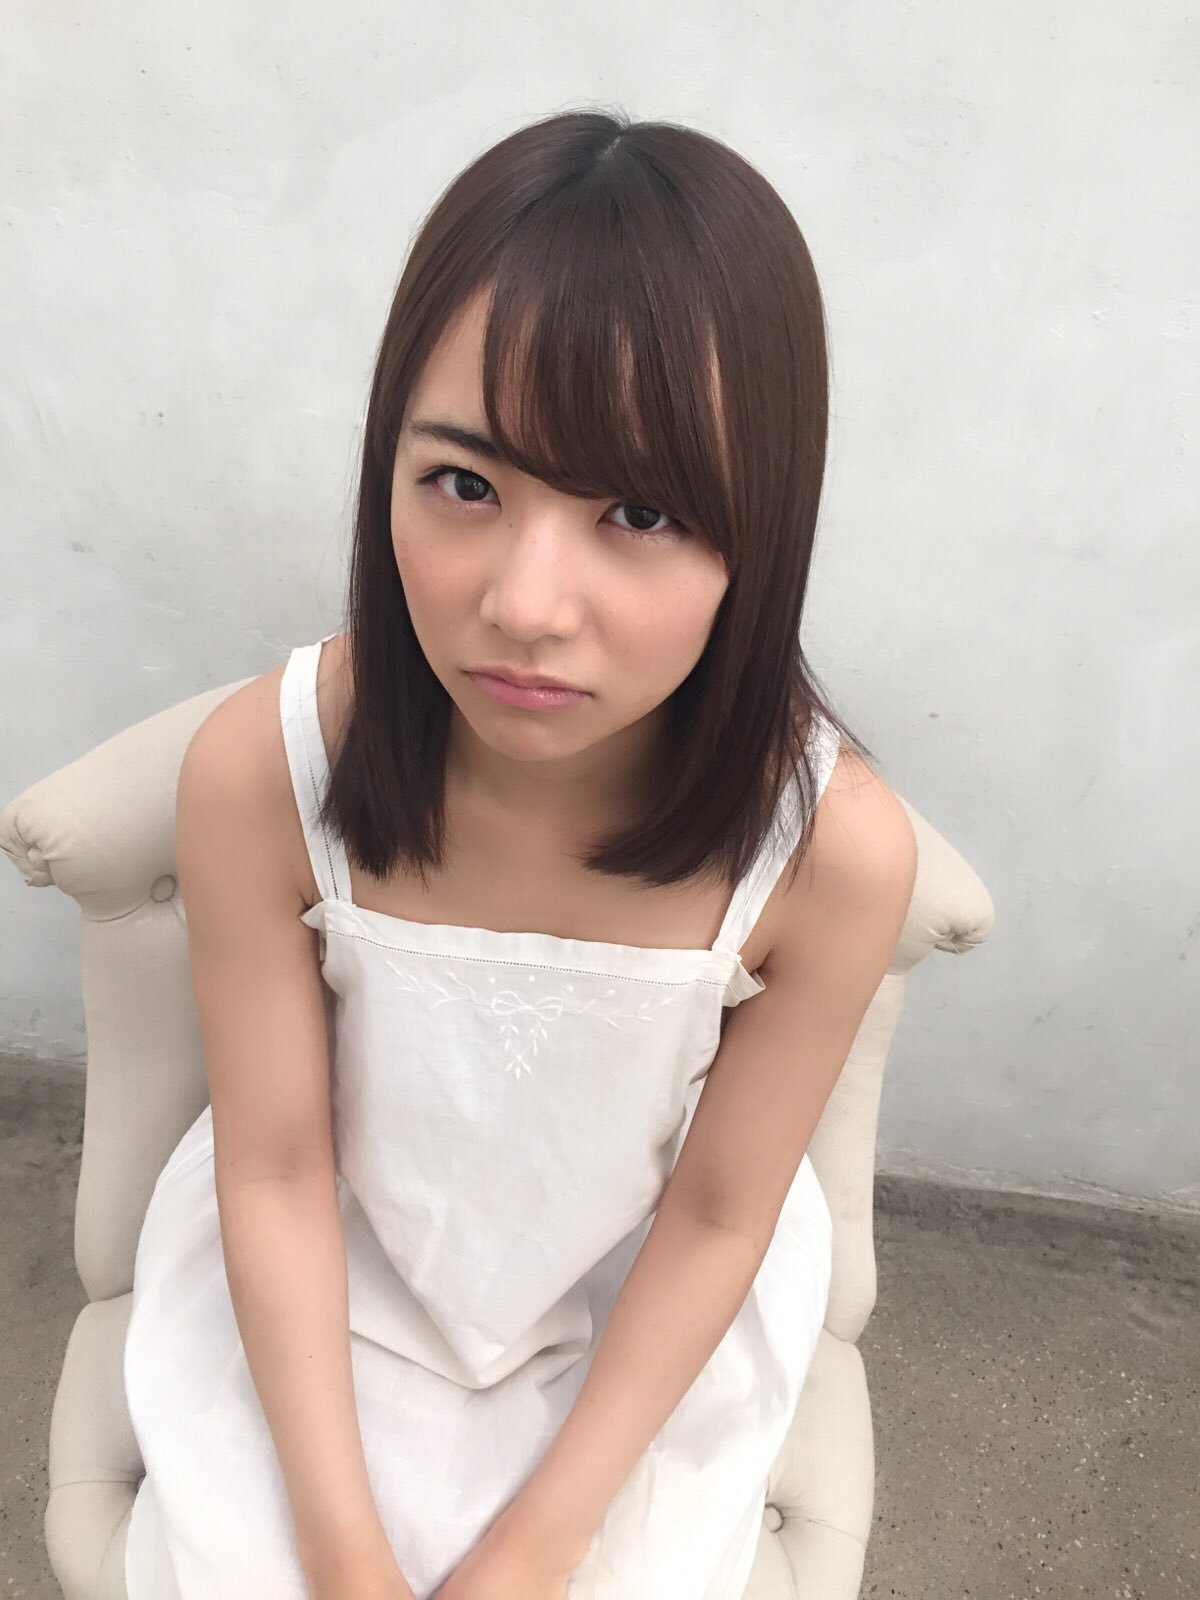 ちょっと怒った顔でこちらを見つめる北野日奈子の画像